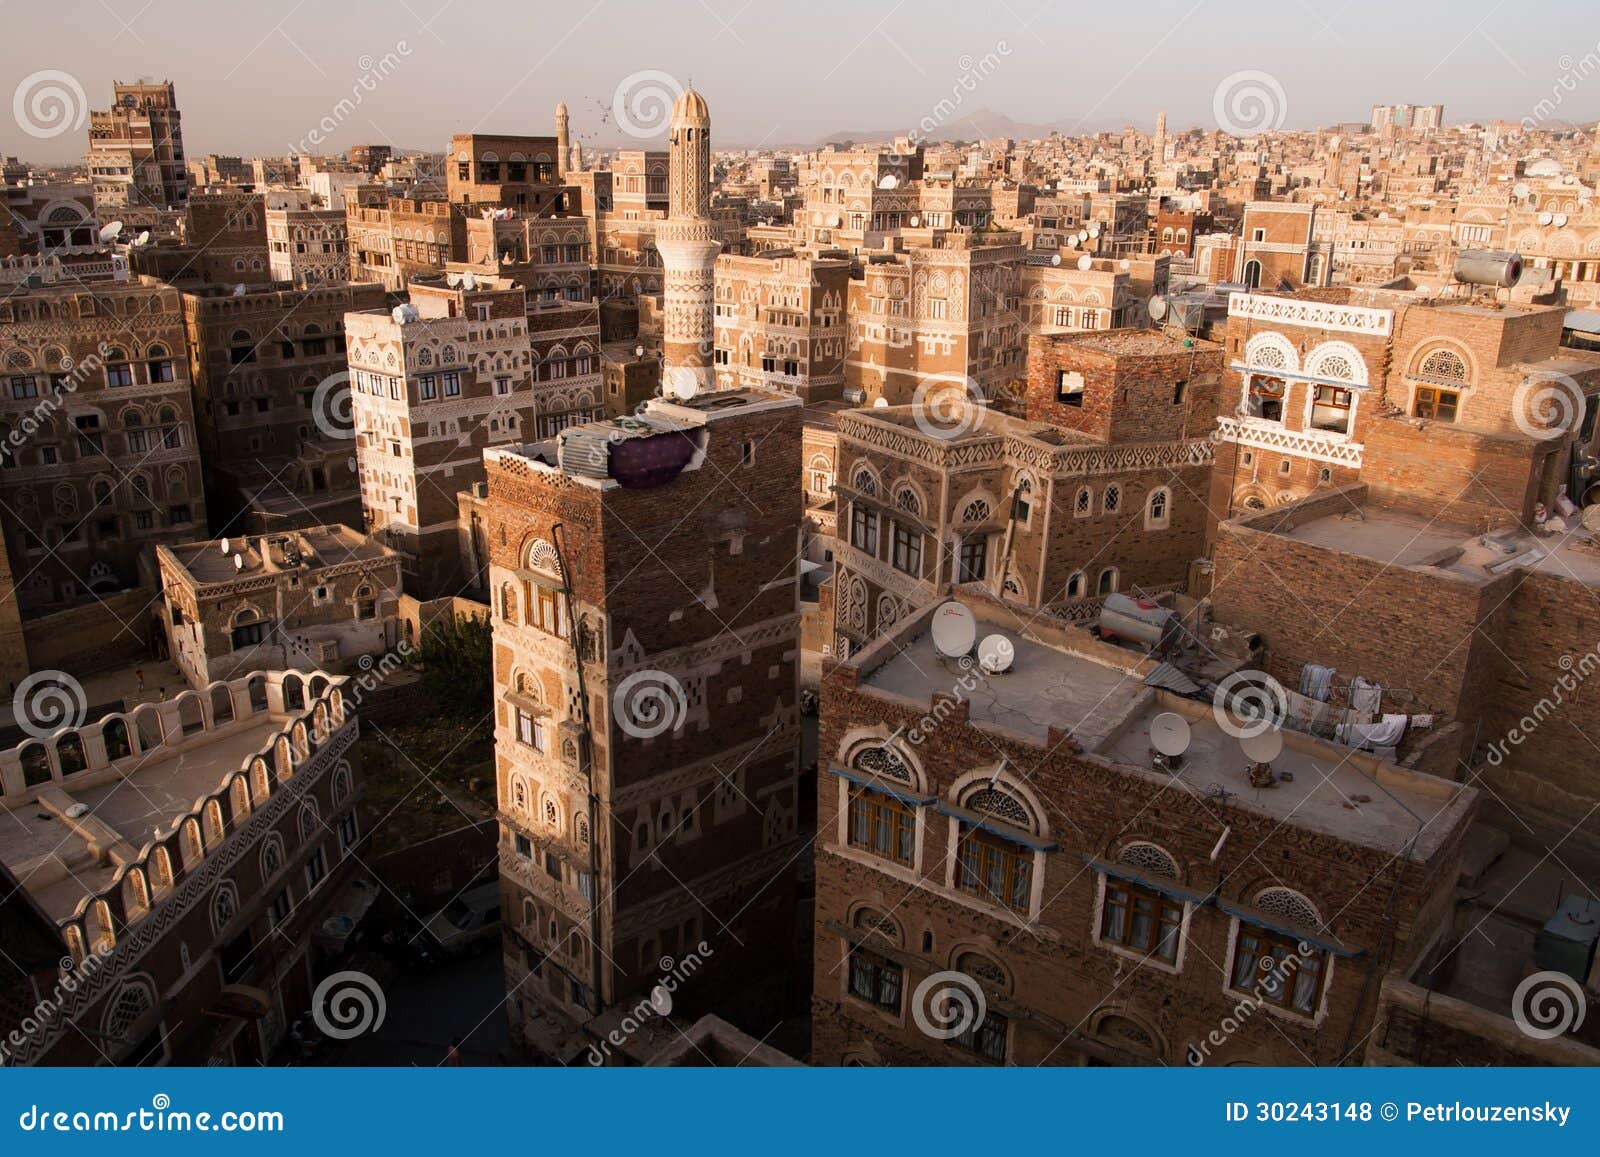 old city of sana in yemen